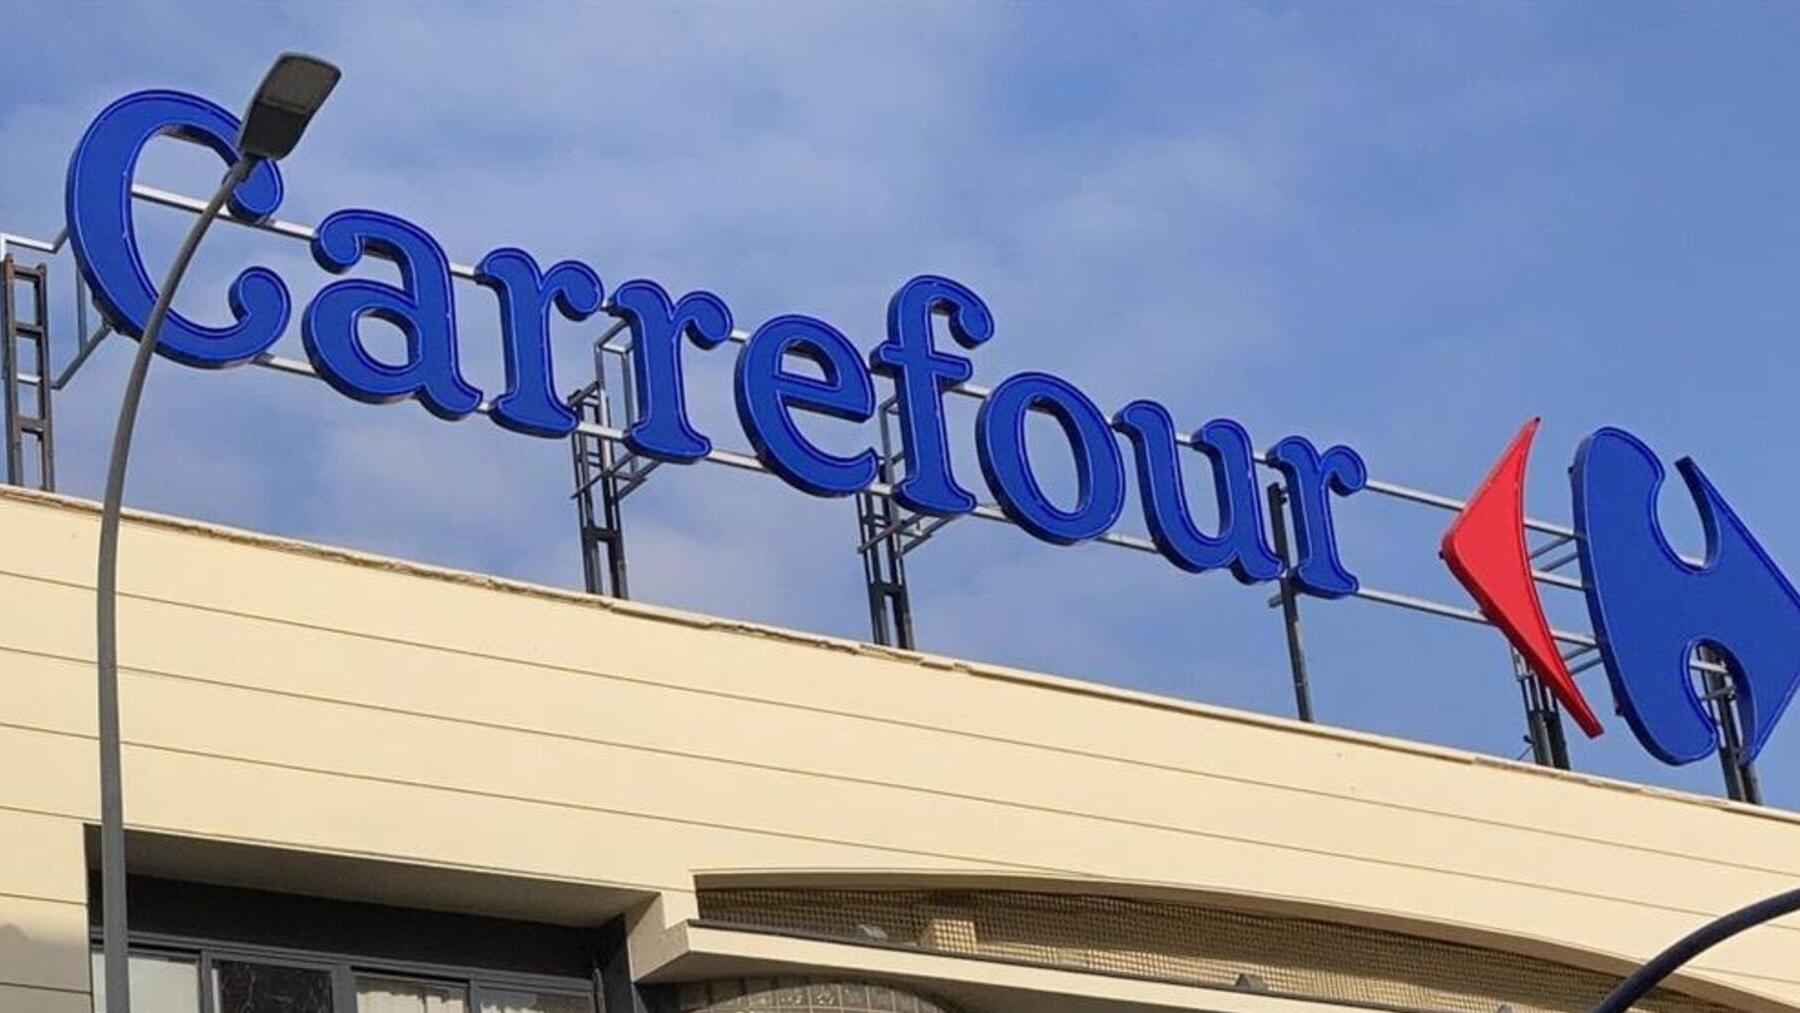 Historia y significado del logo de Carrefour